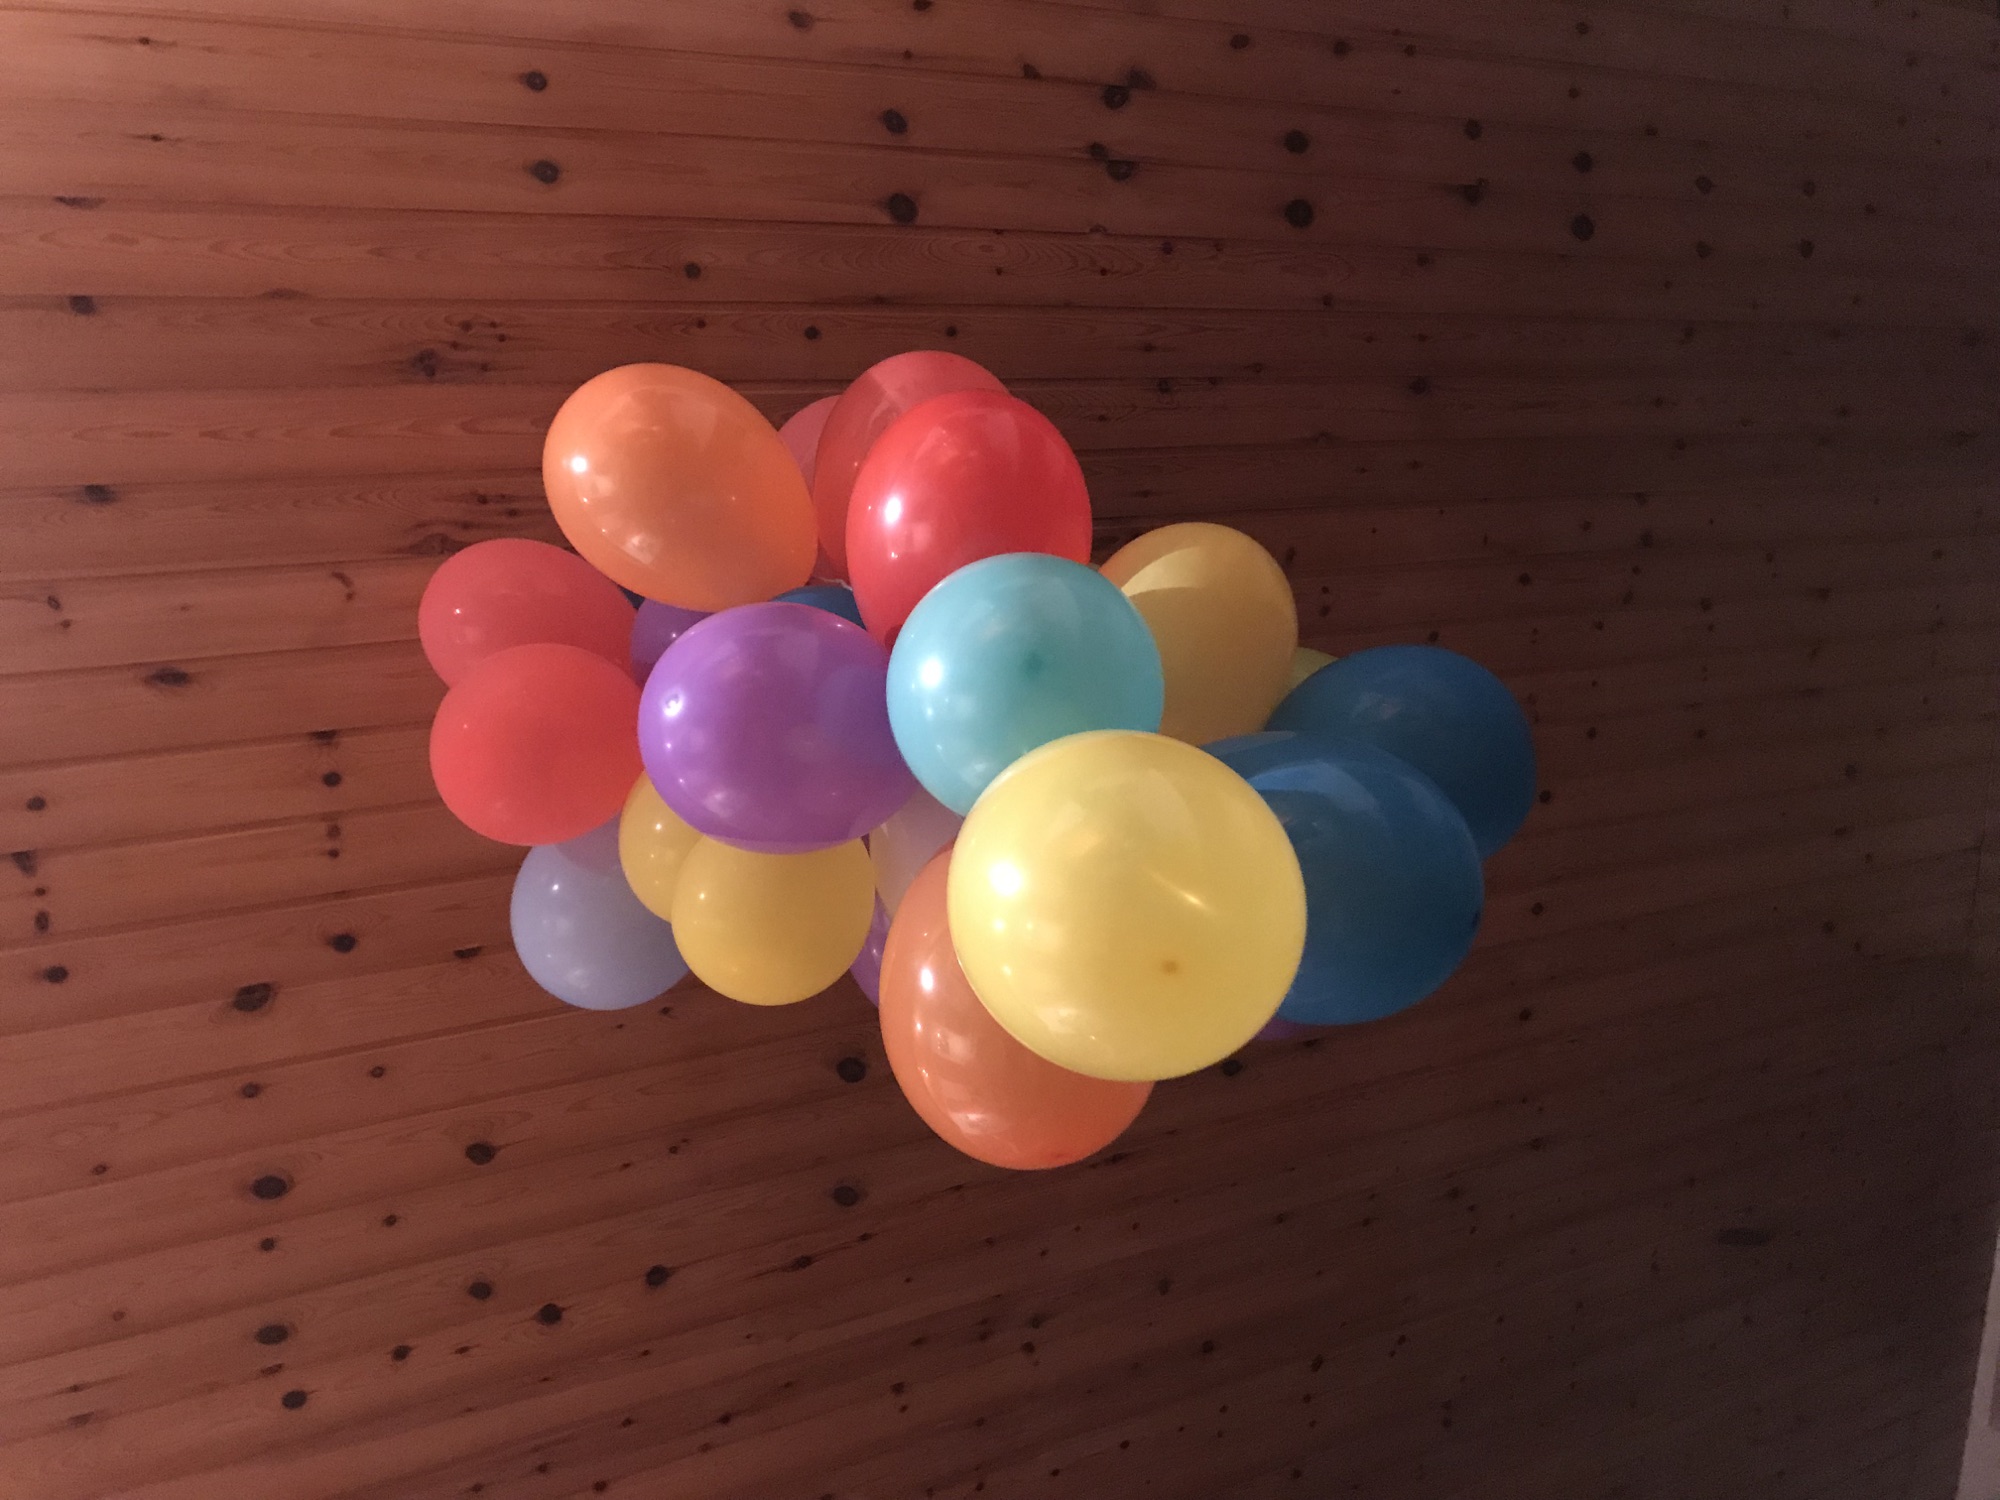 32 balloons